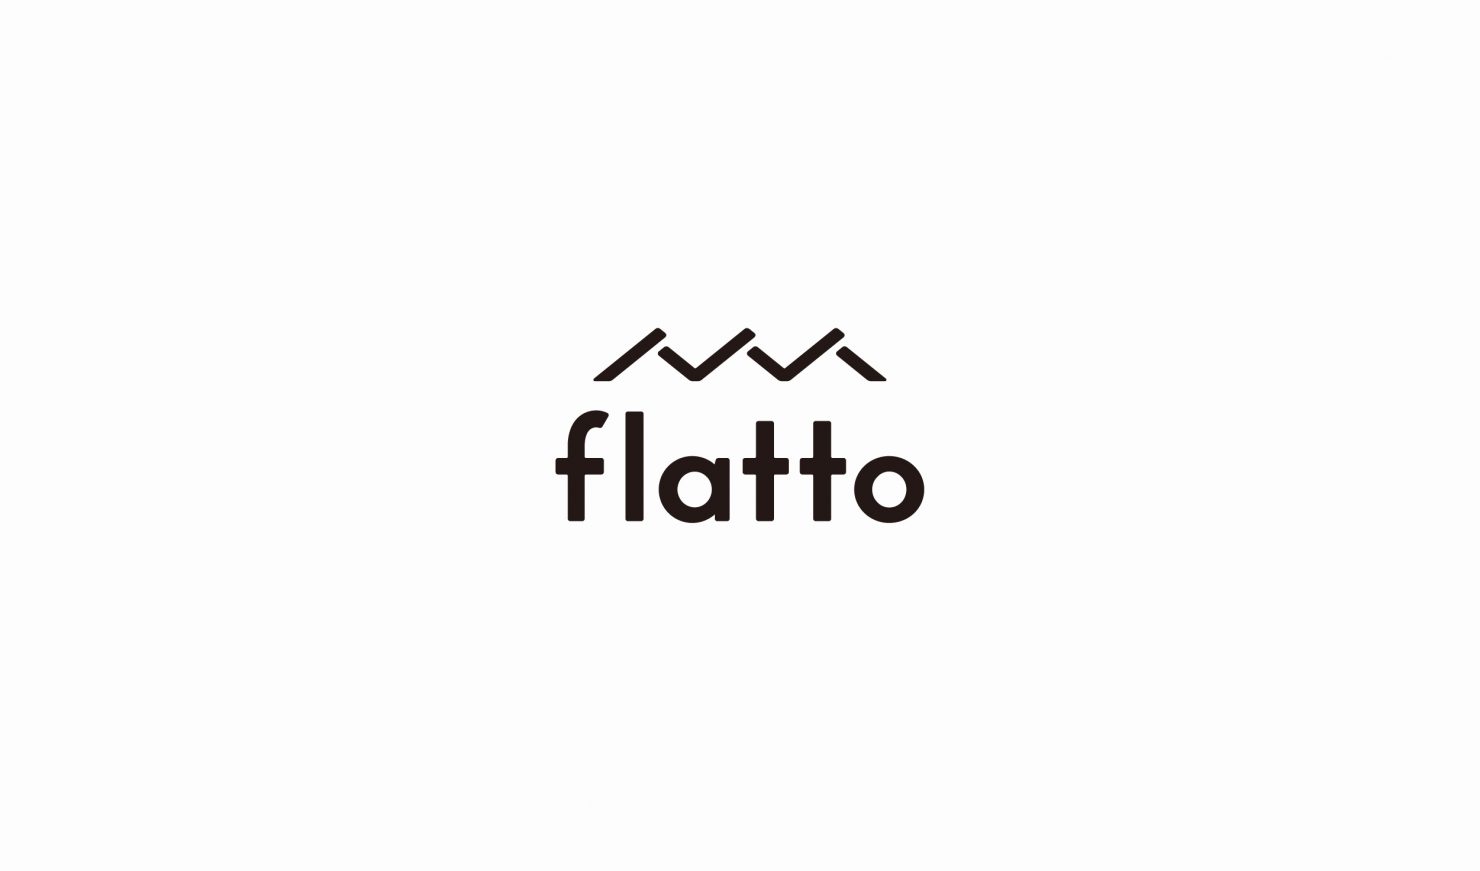 福島県郡山市のデザイン事務所ワイアードブレインズのロゴデザイン実績,flatto12